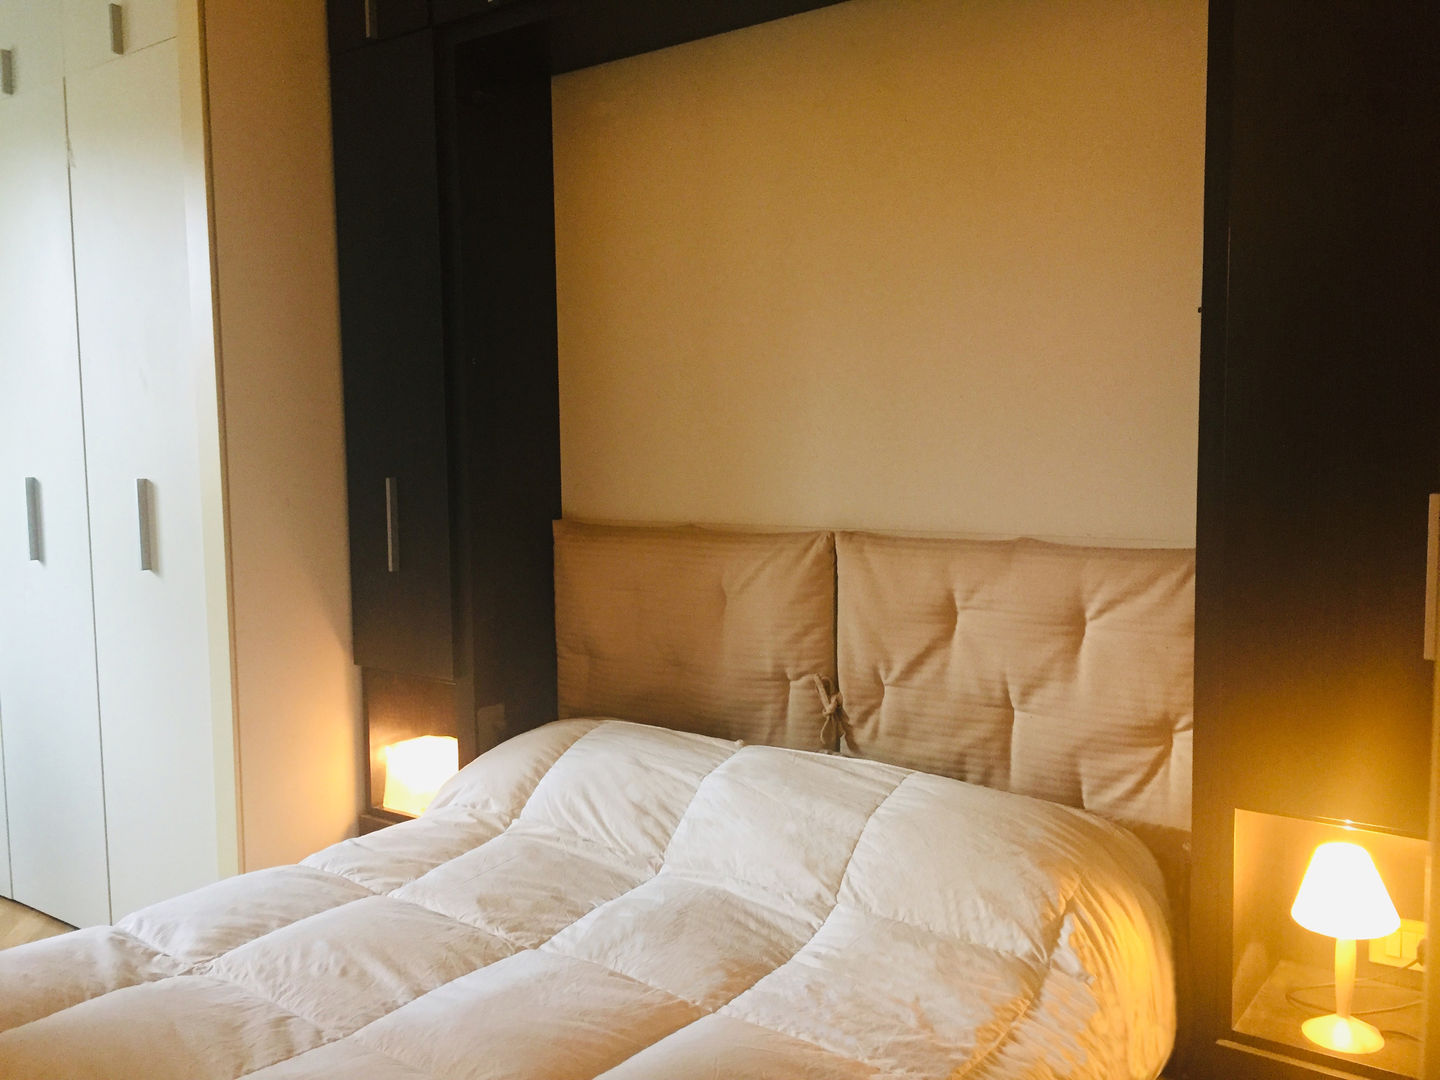 Camera da letto Feng Shui Studio di Architettura, Interni e Design Feng Shui Camera da letto piccola Legno Effetto legno Camera da letto Feng Shui, letto, abat-jour